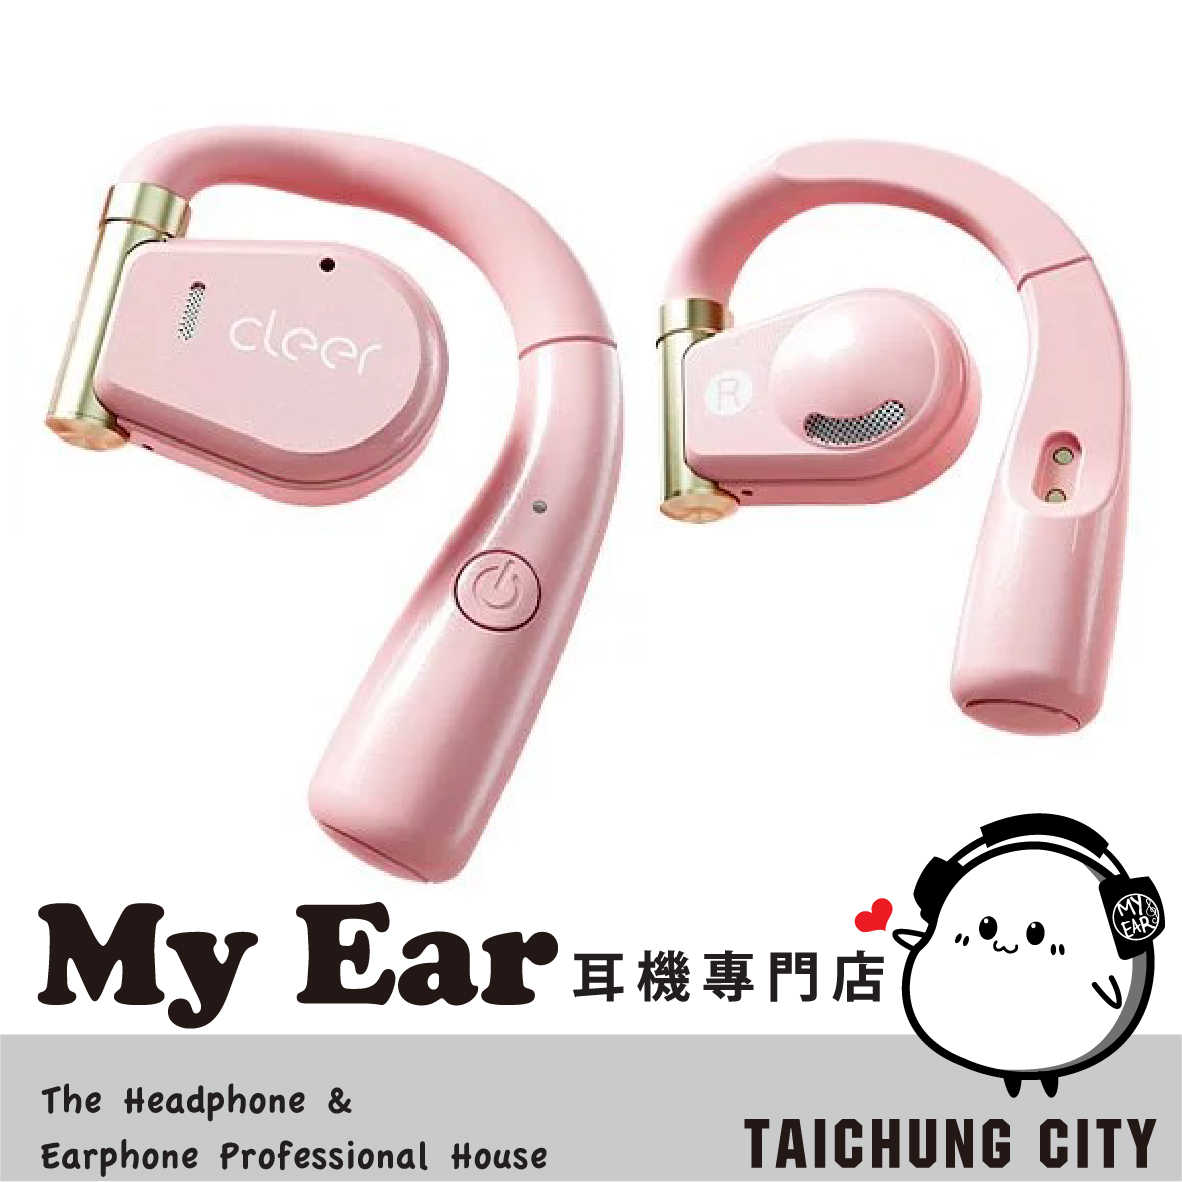 Cleer ARC 粉色 通話降噪 低延遲 耳掛 開放式 真無線 藍牙耳機 | My Ear耳機專門店